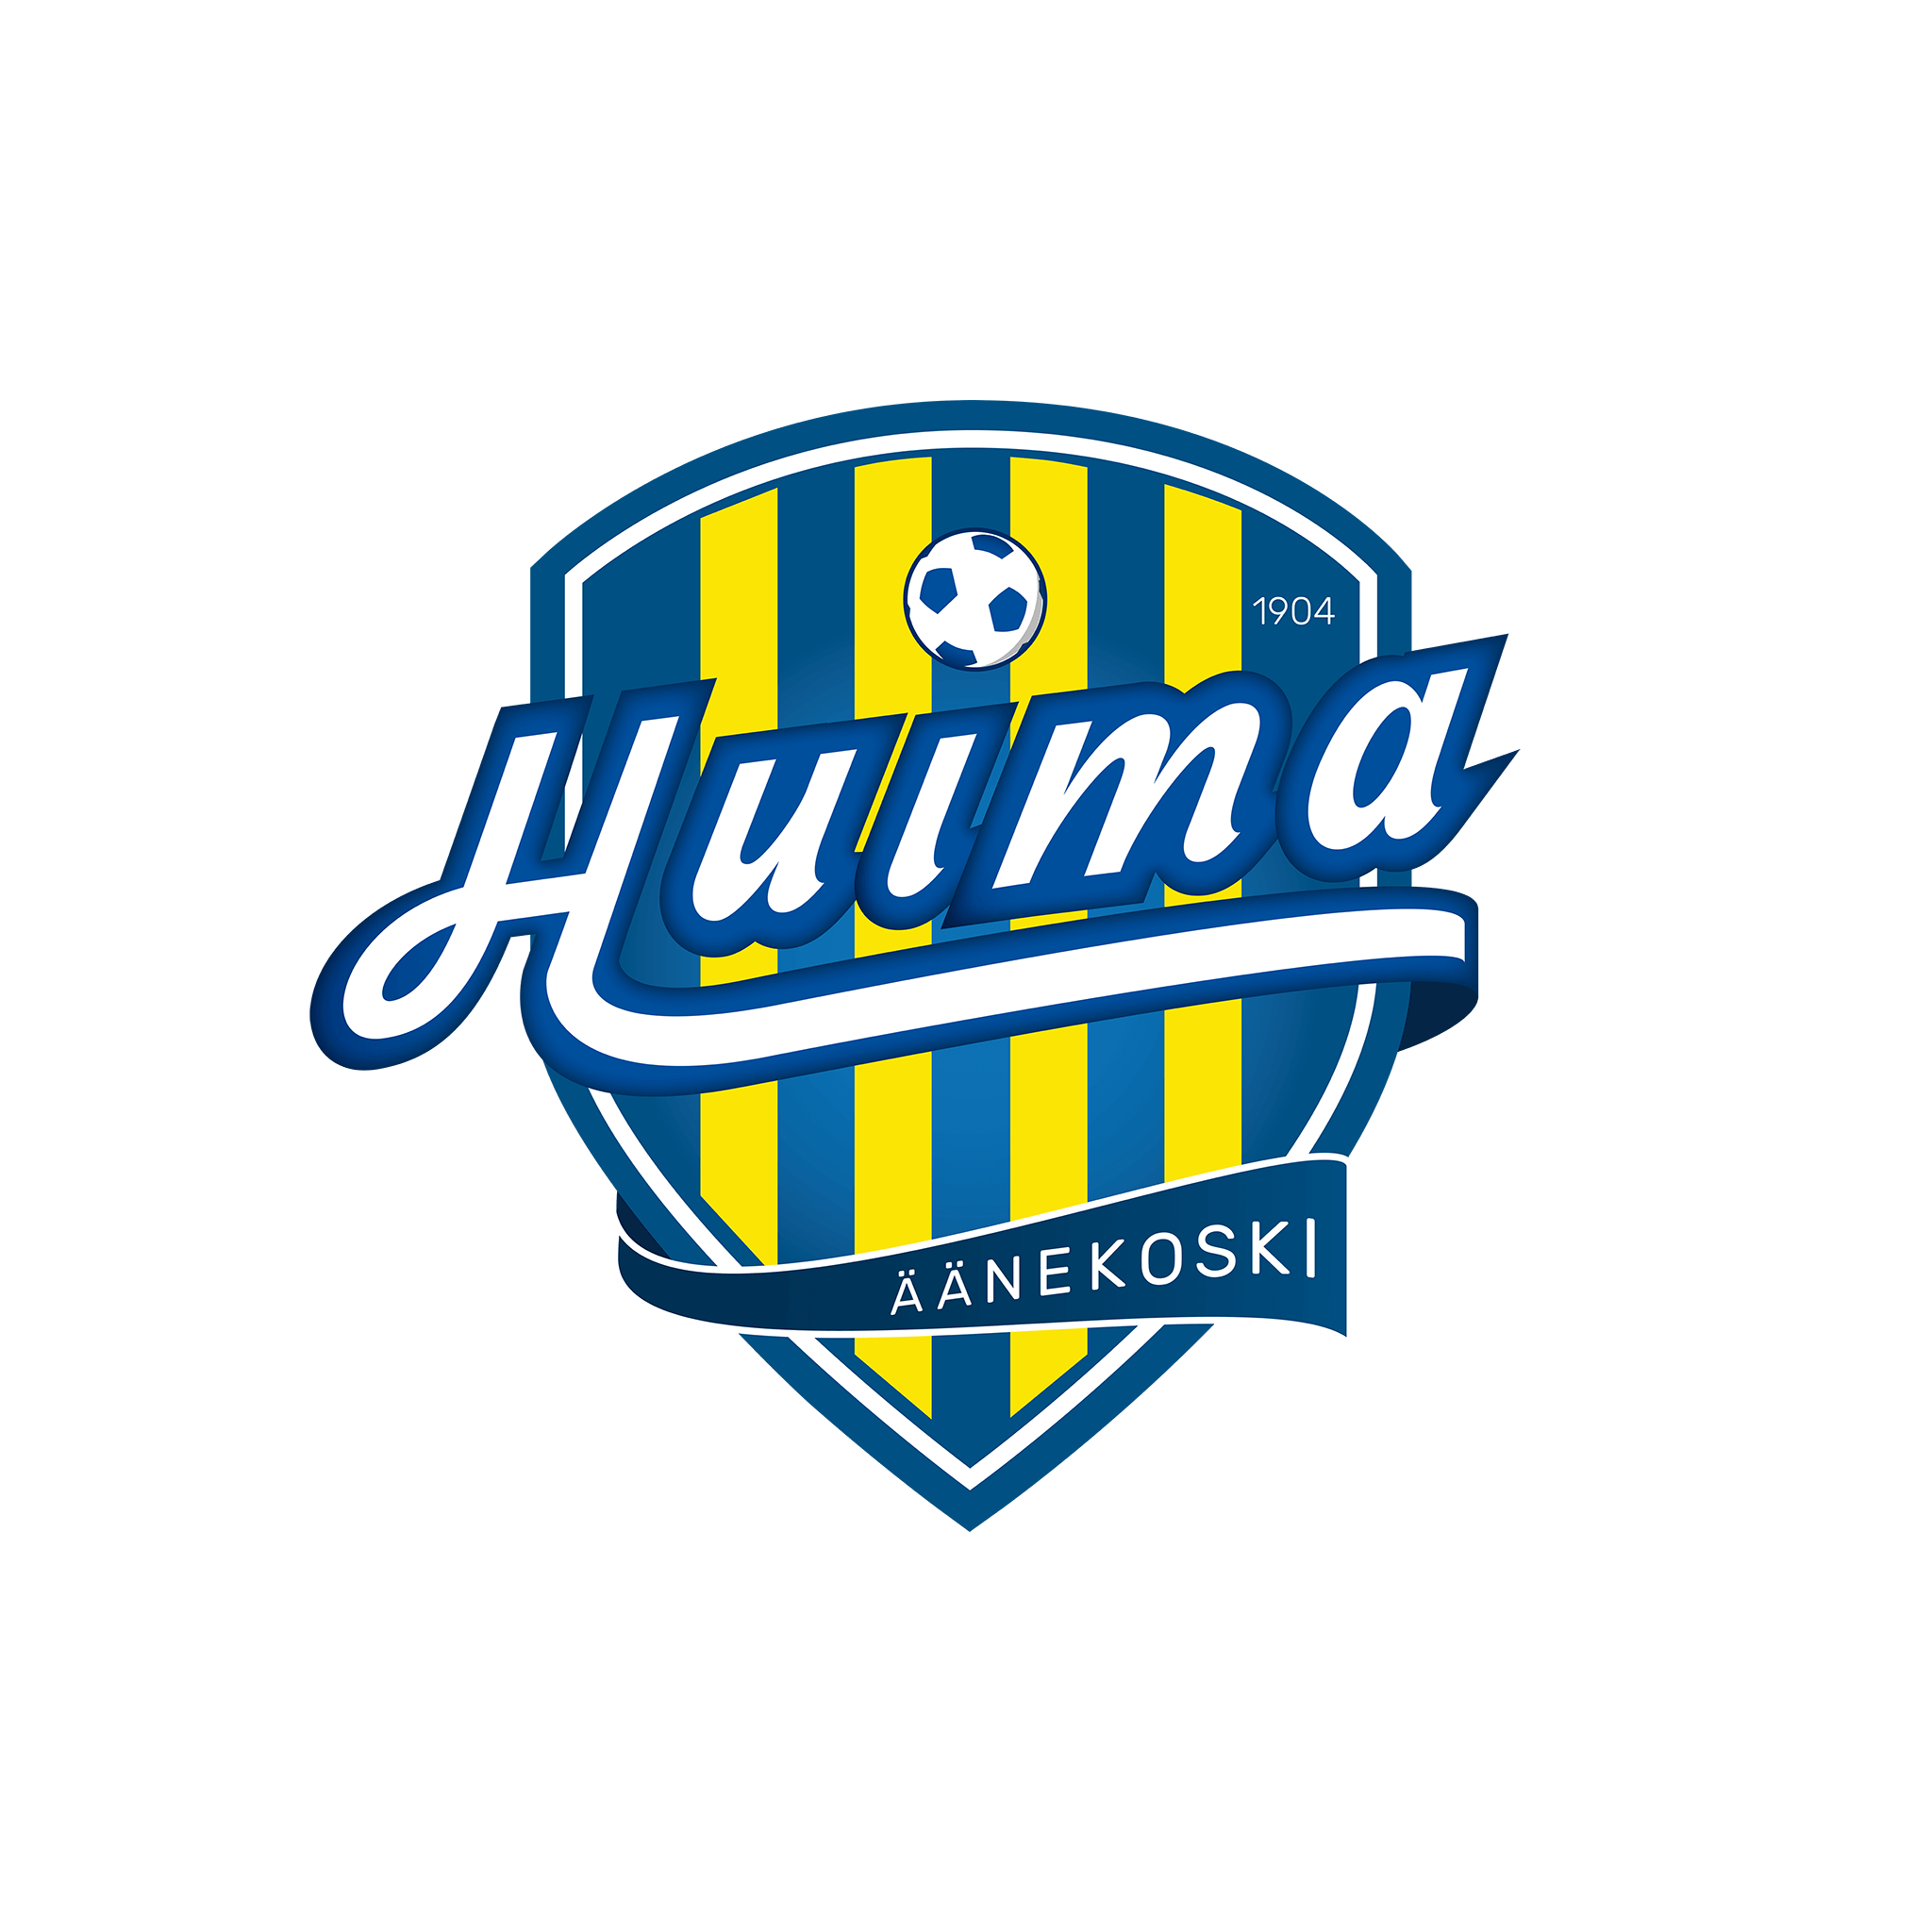 logon suunnittelu äänekosken huima juniorijalkapallo